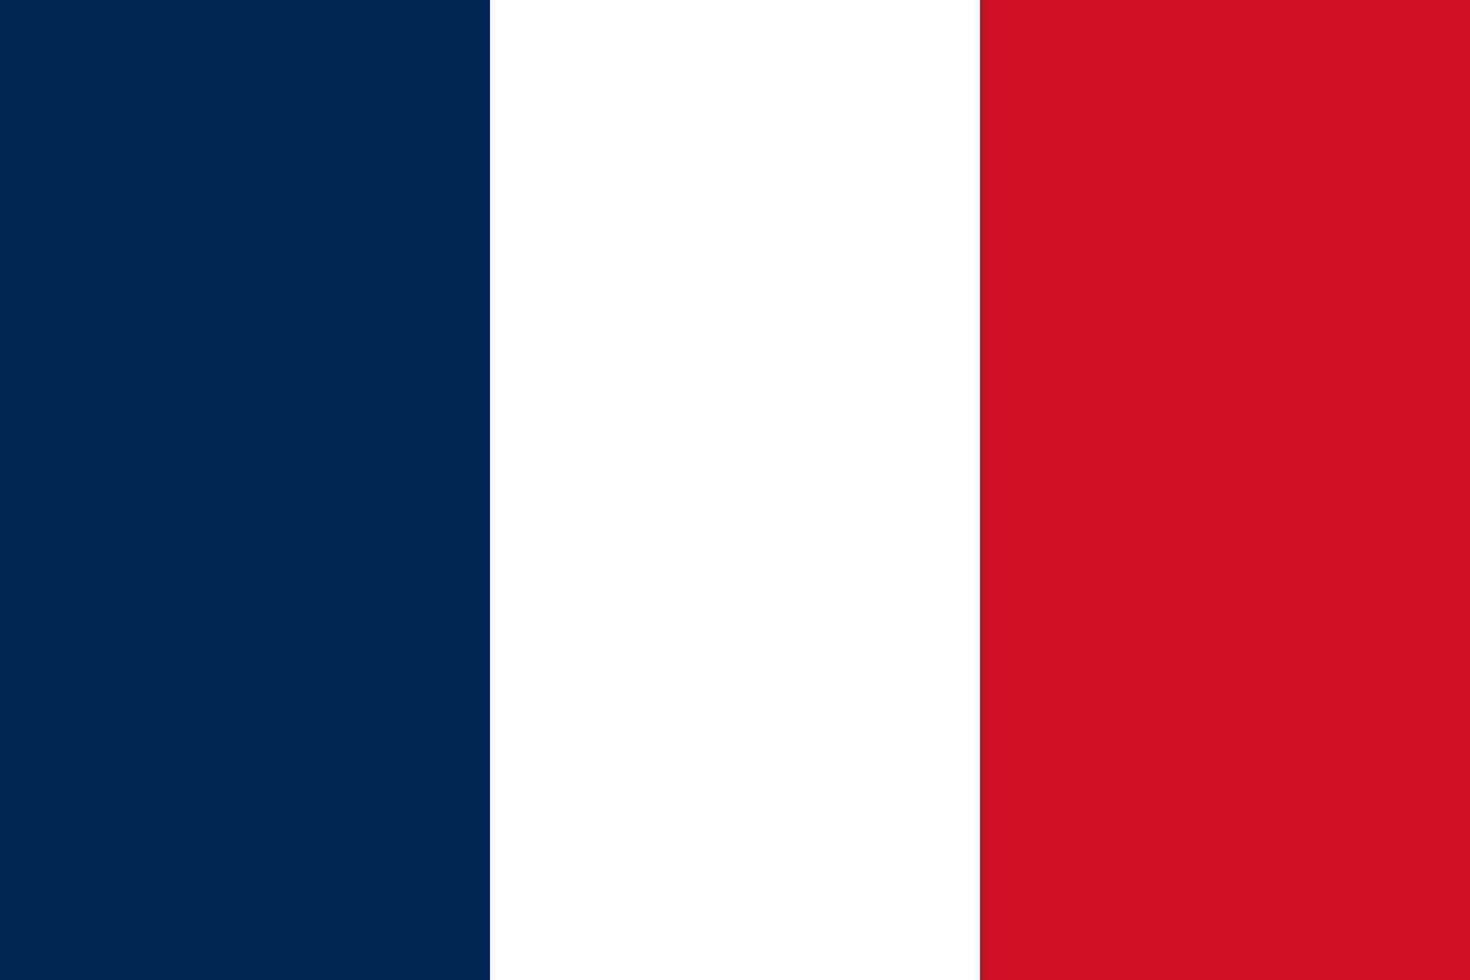 con orgullo francés - escaparate el tricolor belleza de el francés bandera mediante un sorprendentes vector ilustración. celebrar el espíritu de Francia con esta vibrante gráfico